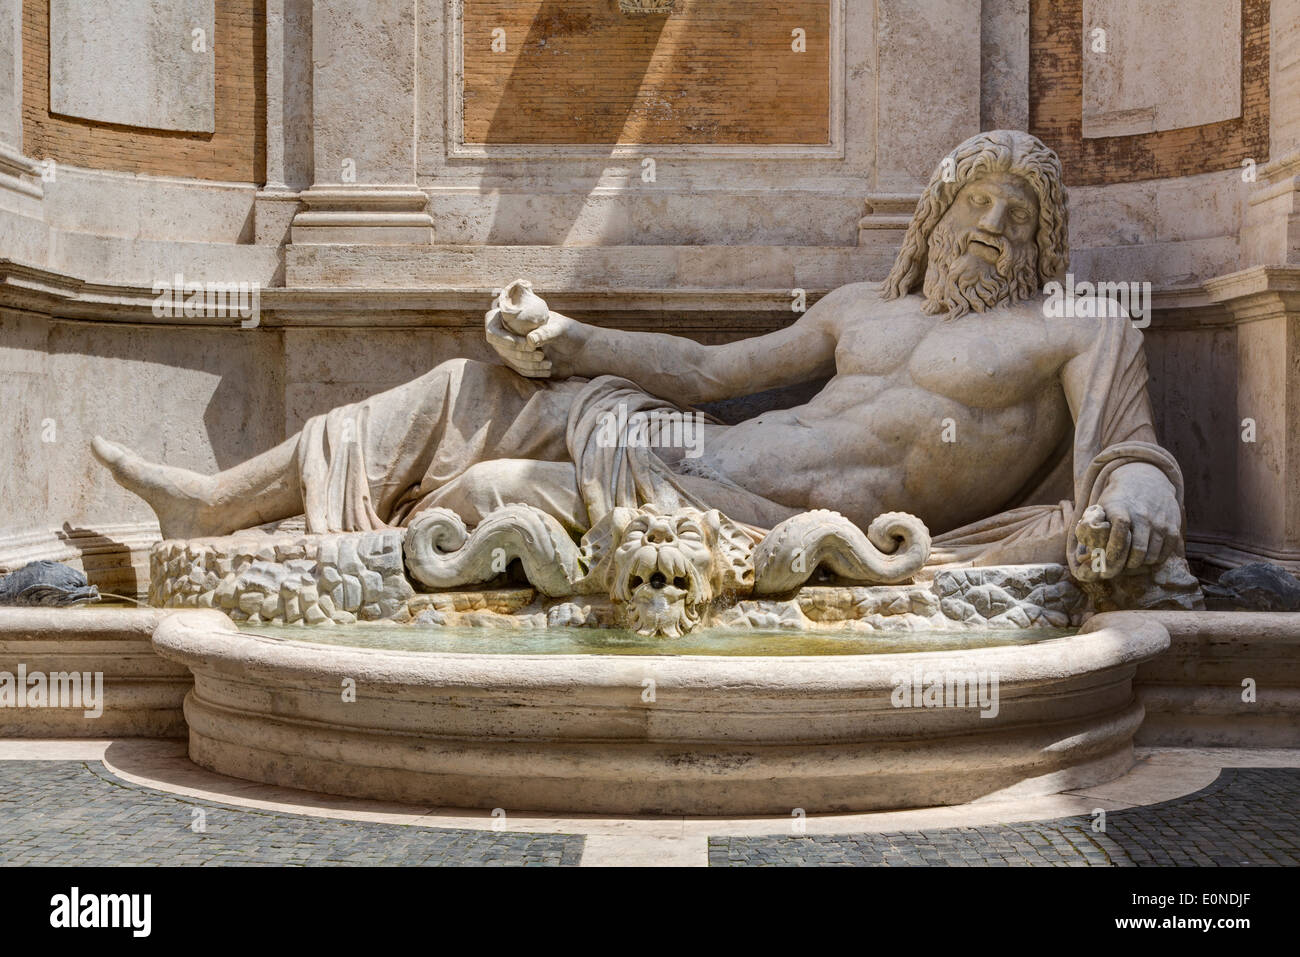 Statua colossale restaurata come Oceanus, Marforio, Musei Capitolini di Roma, Italia Foto Stock